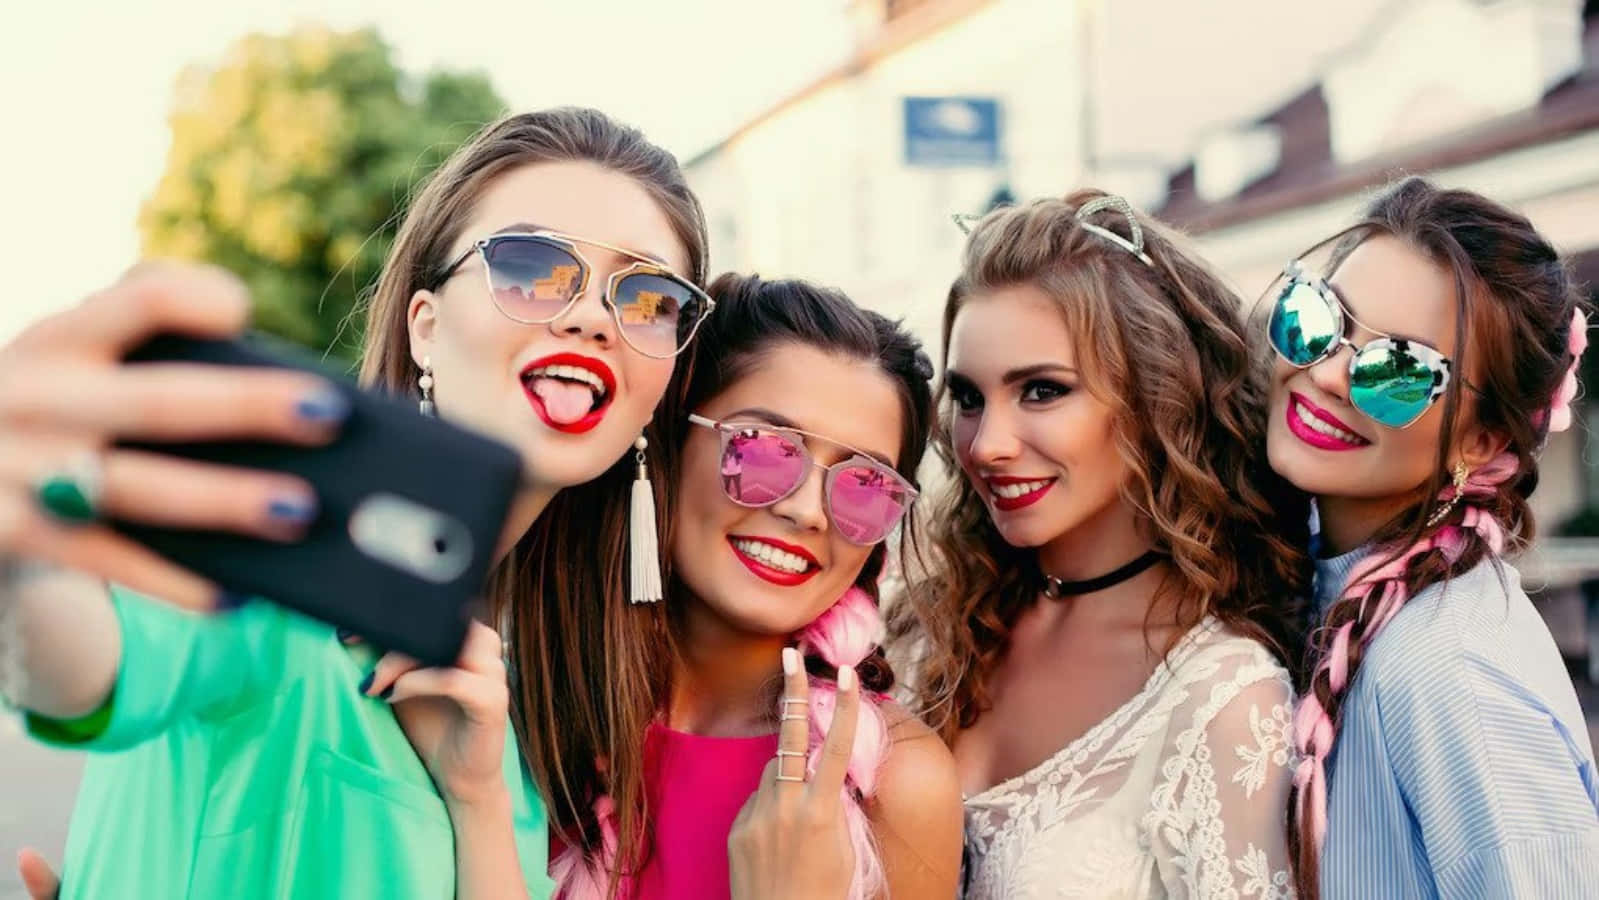 Imagende Mejores Amigos En Una Selfie Con Gafas De Sol